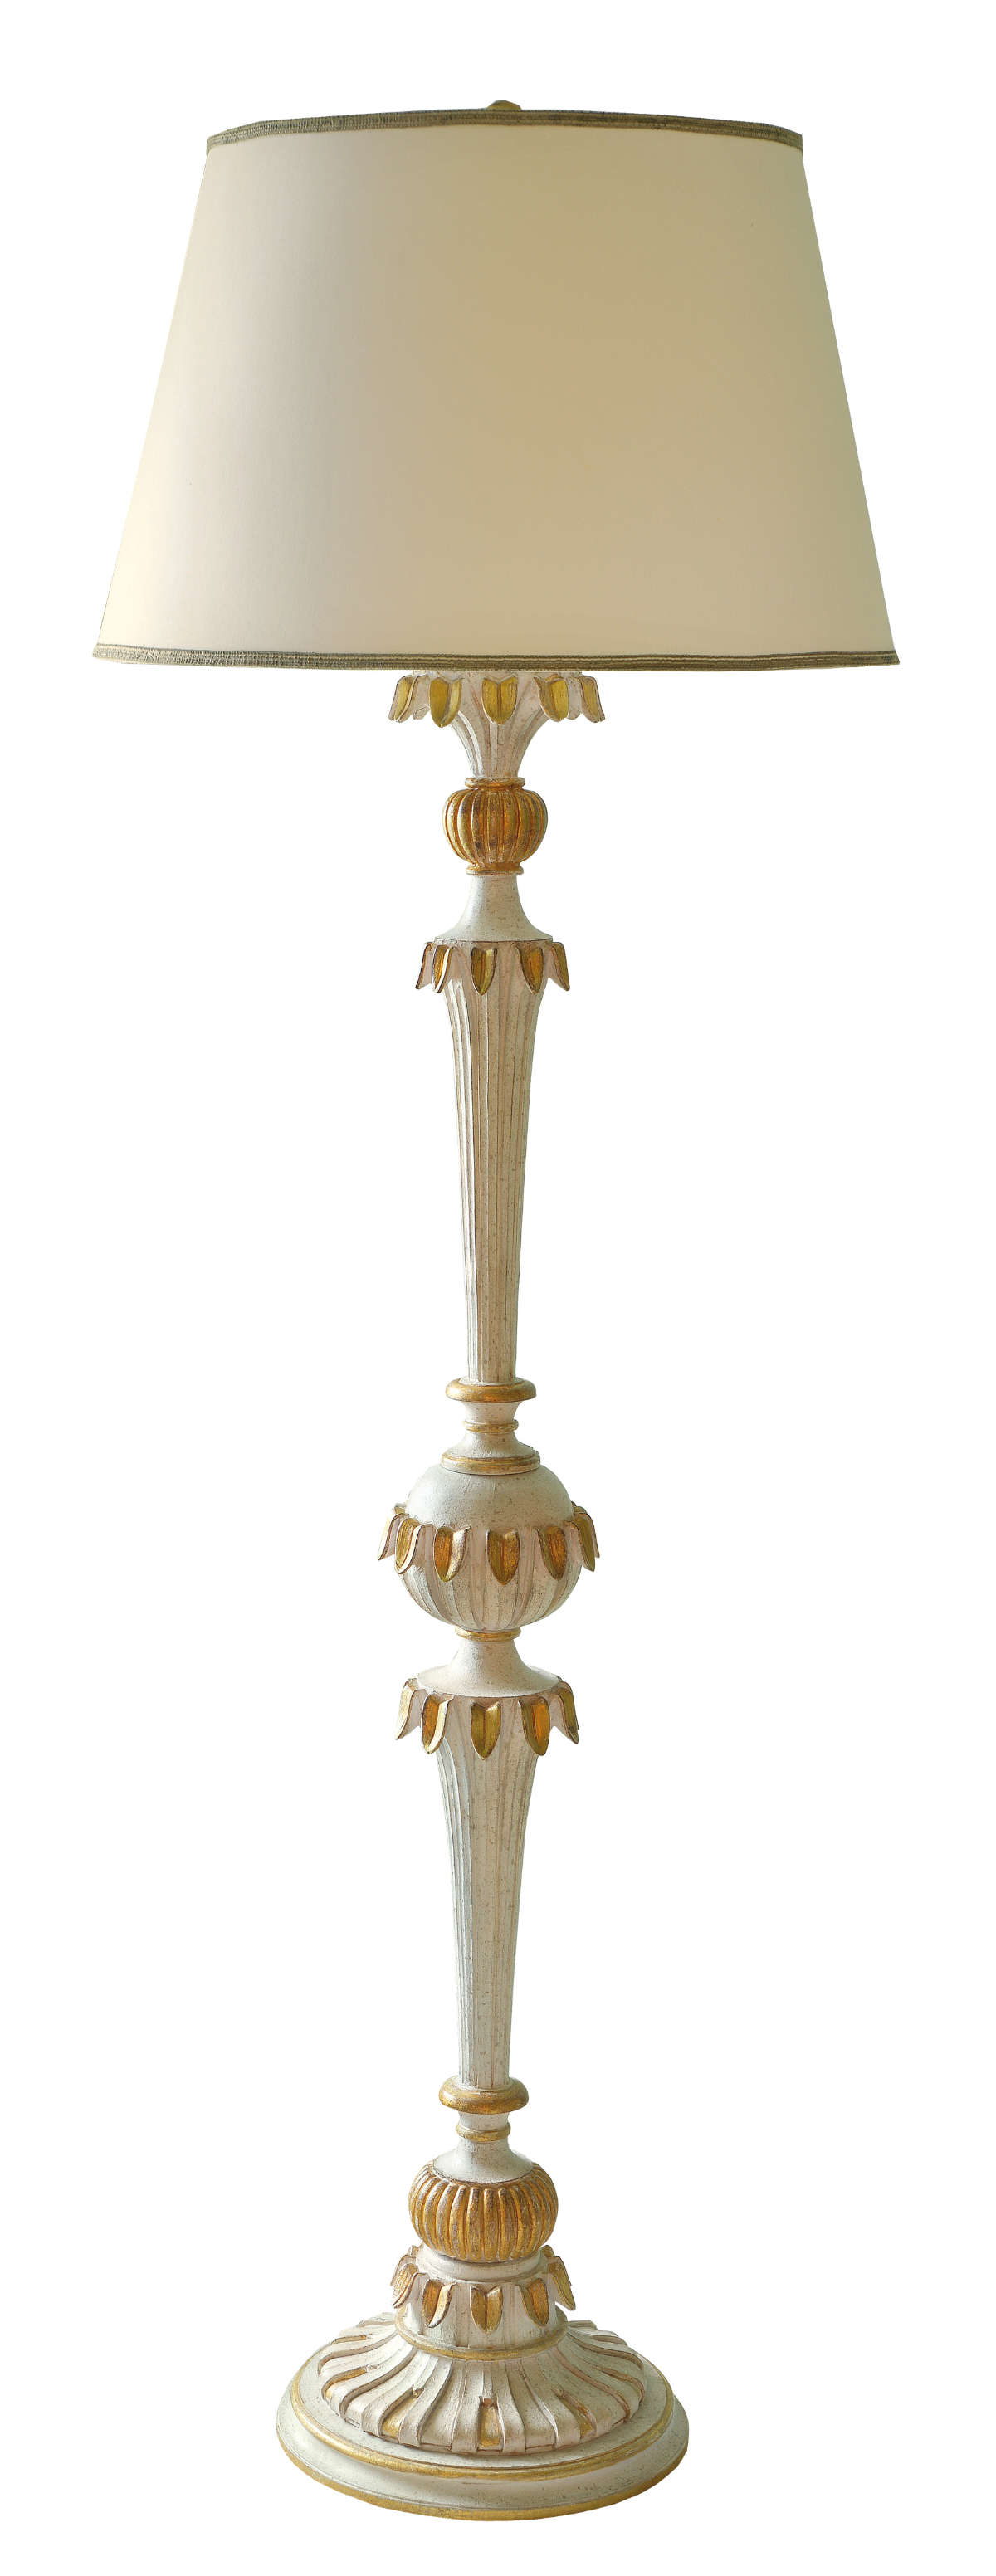 Stehlampe Nora, aus Holz, handgeschnitzt, in creme und gold Tönen, sehr hoch, Frontalansicht.